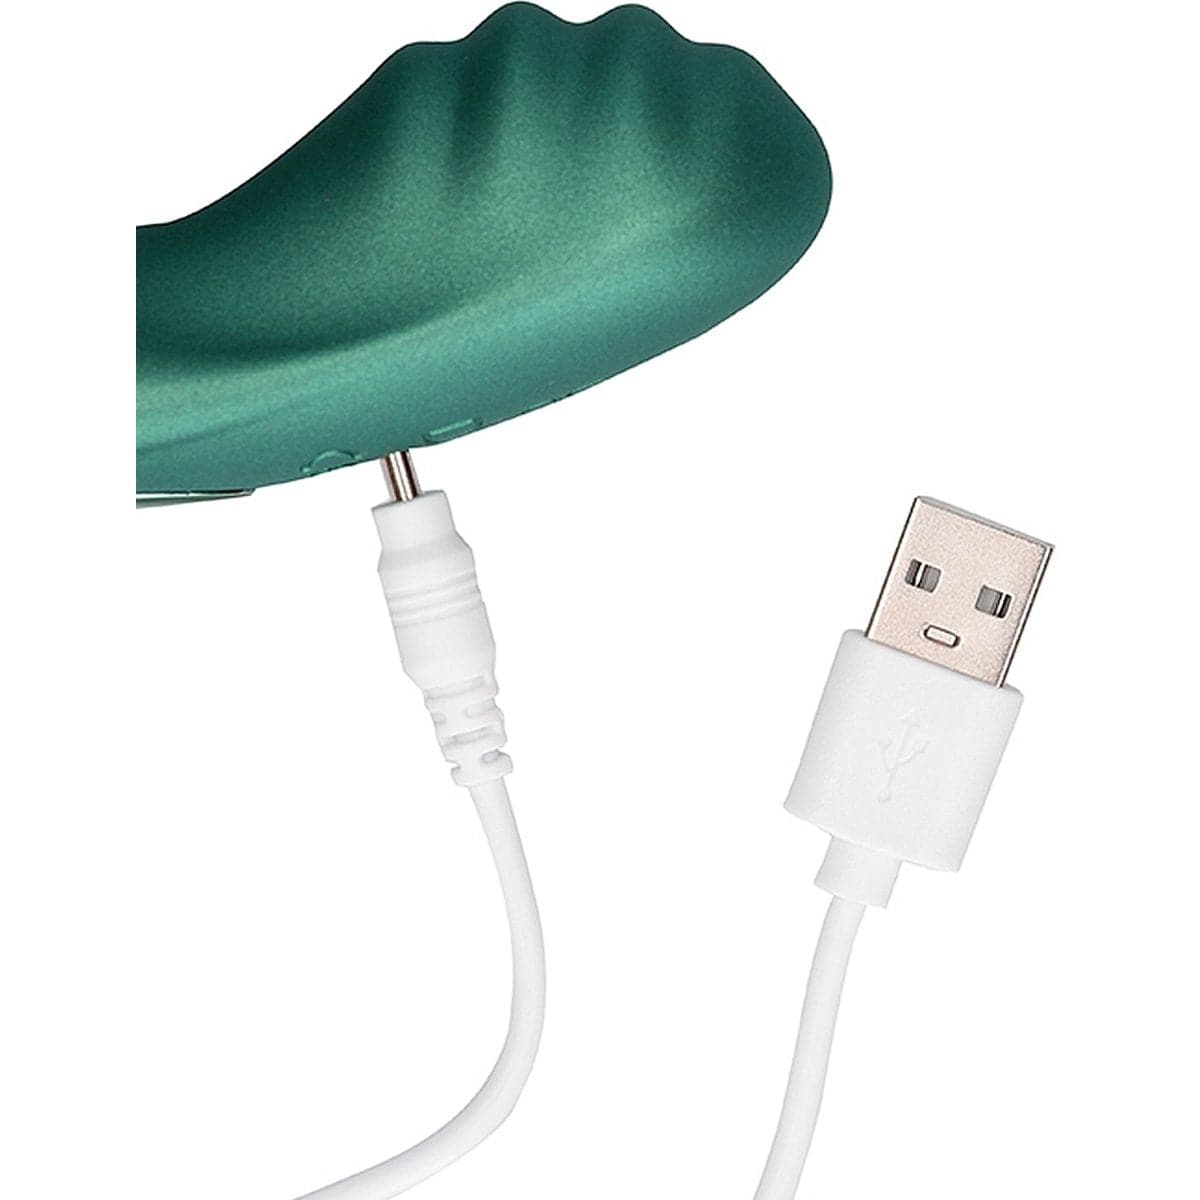 Estimulador Beaded Verde USB com Controlo Remoto, 10vibrações